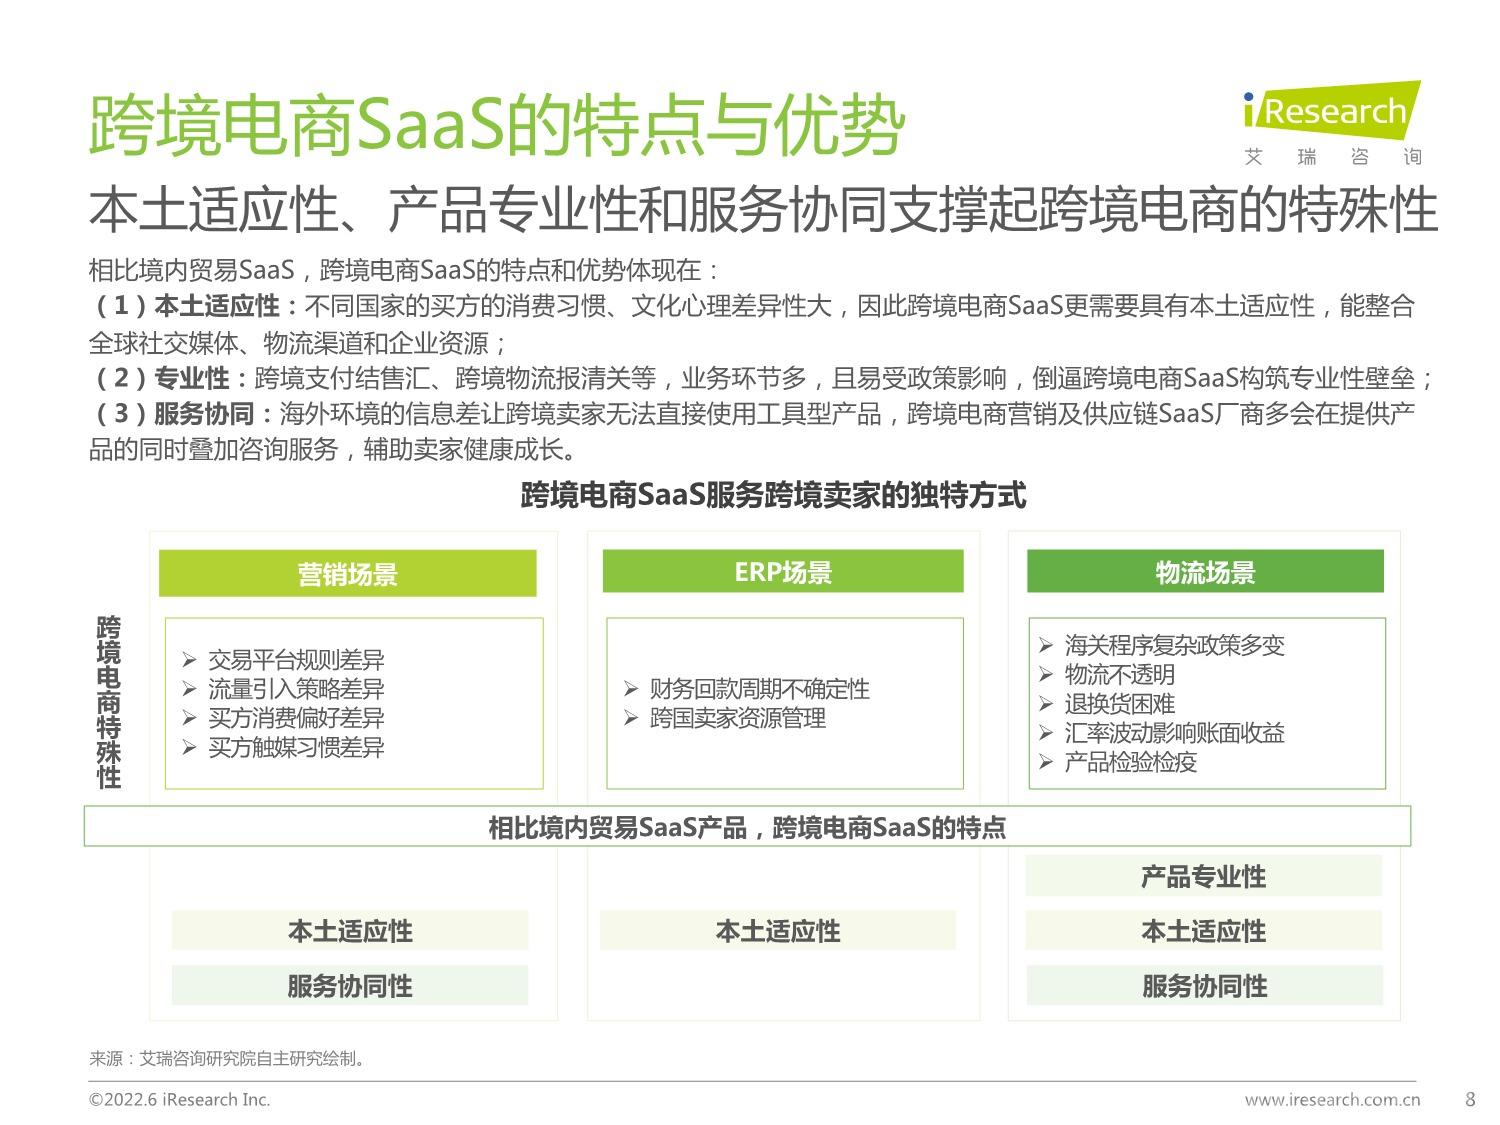 中国跨境电商SaaS行业研究报告_8.jpeg